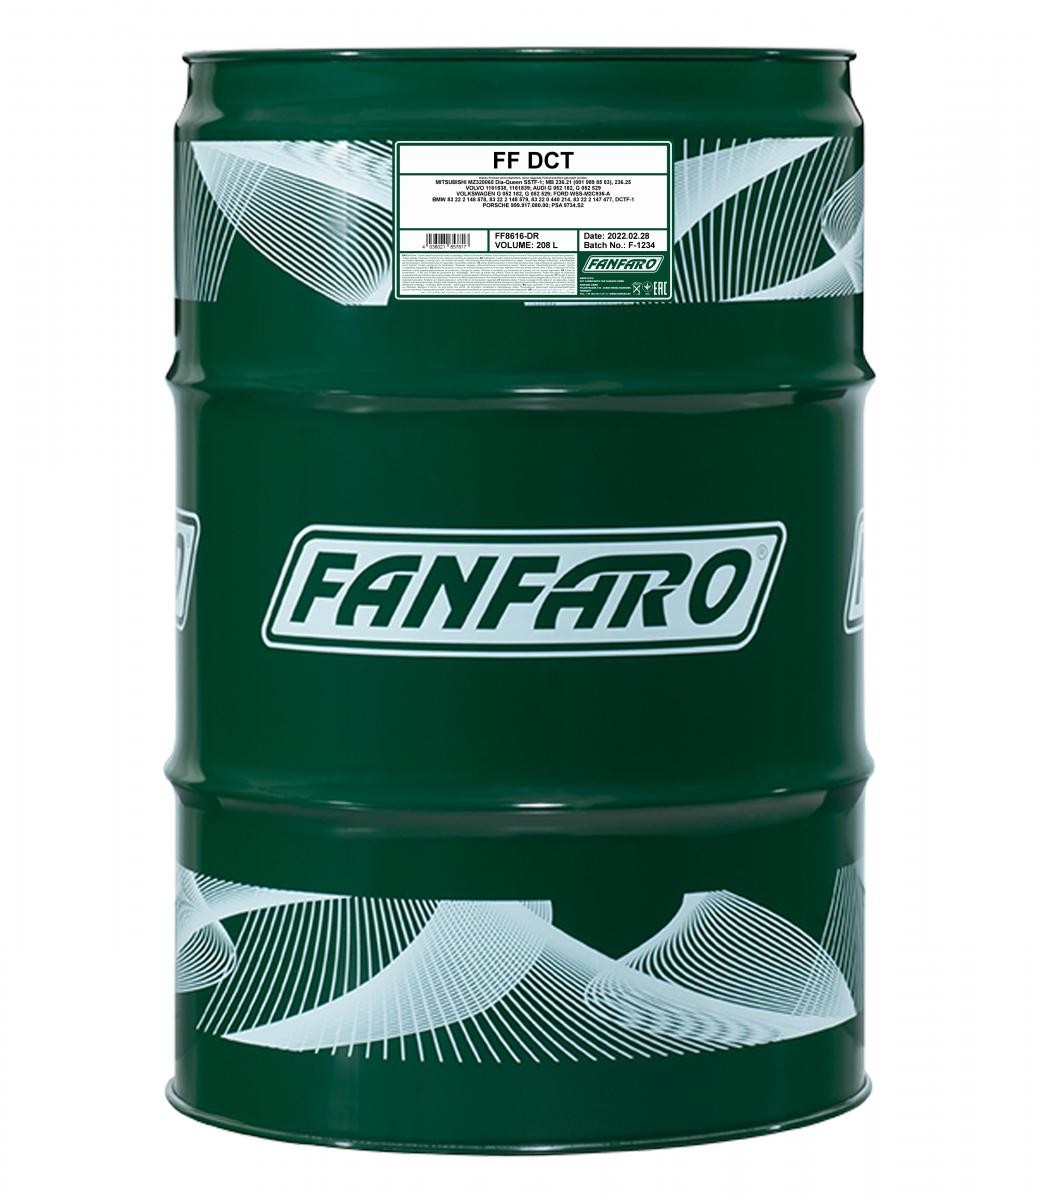 Original FANFARO Transmission oil FF8616-DR for FORD FOCUS